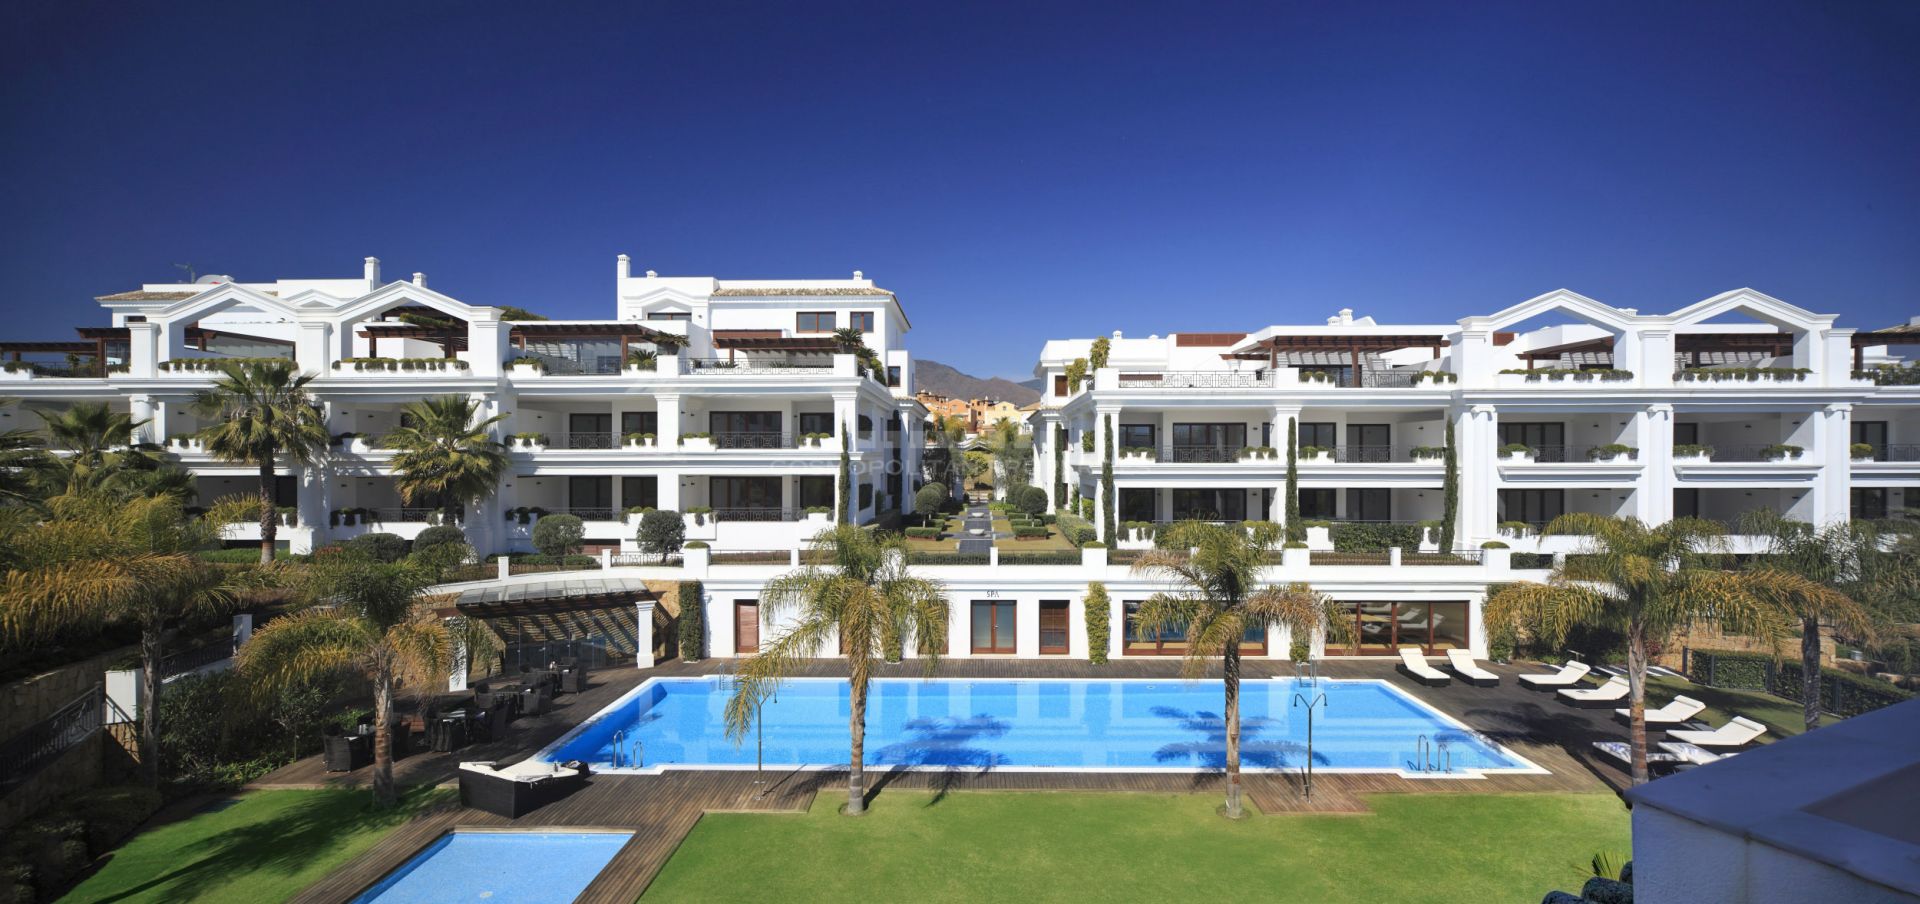 Exclusivos apartamentos frente al mar Mediterráneo